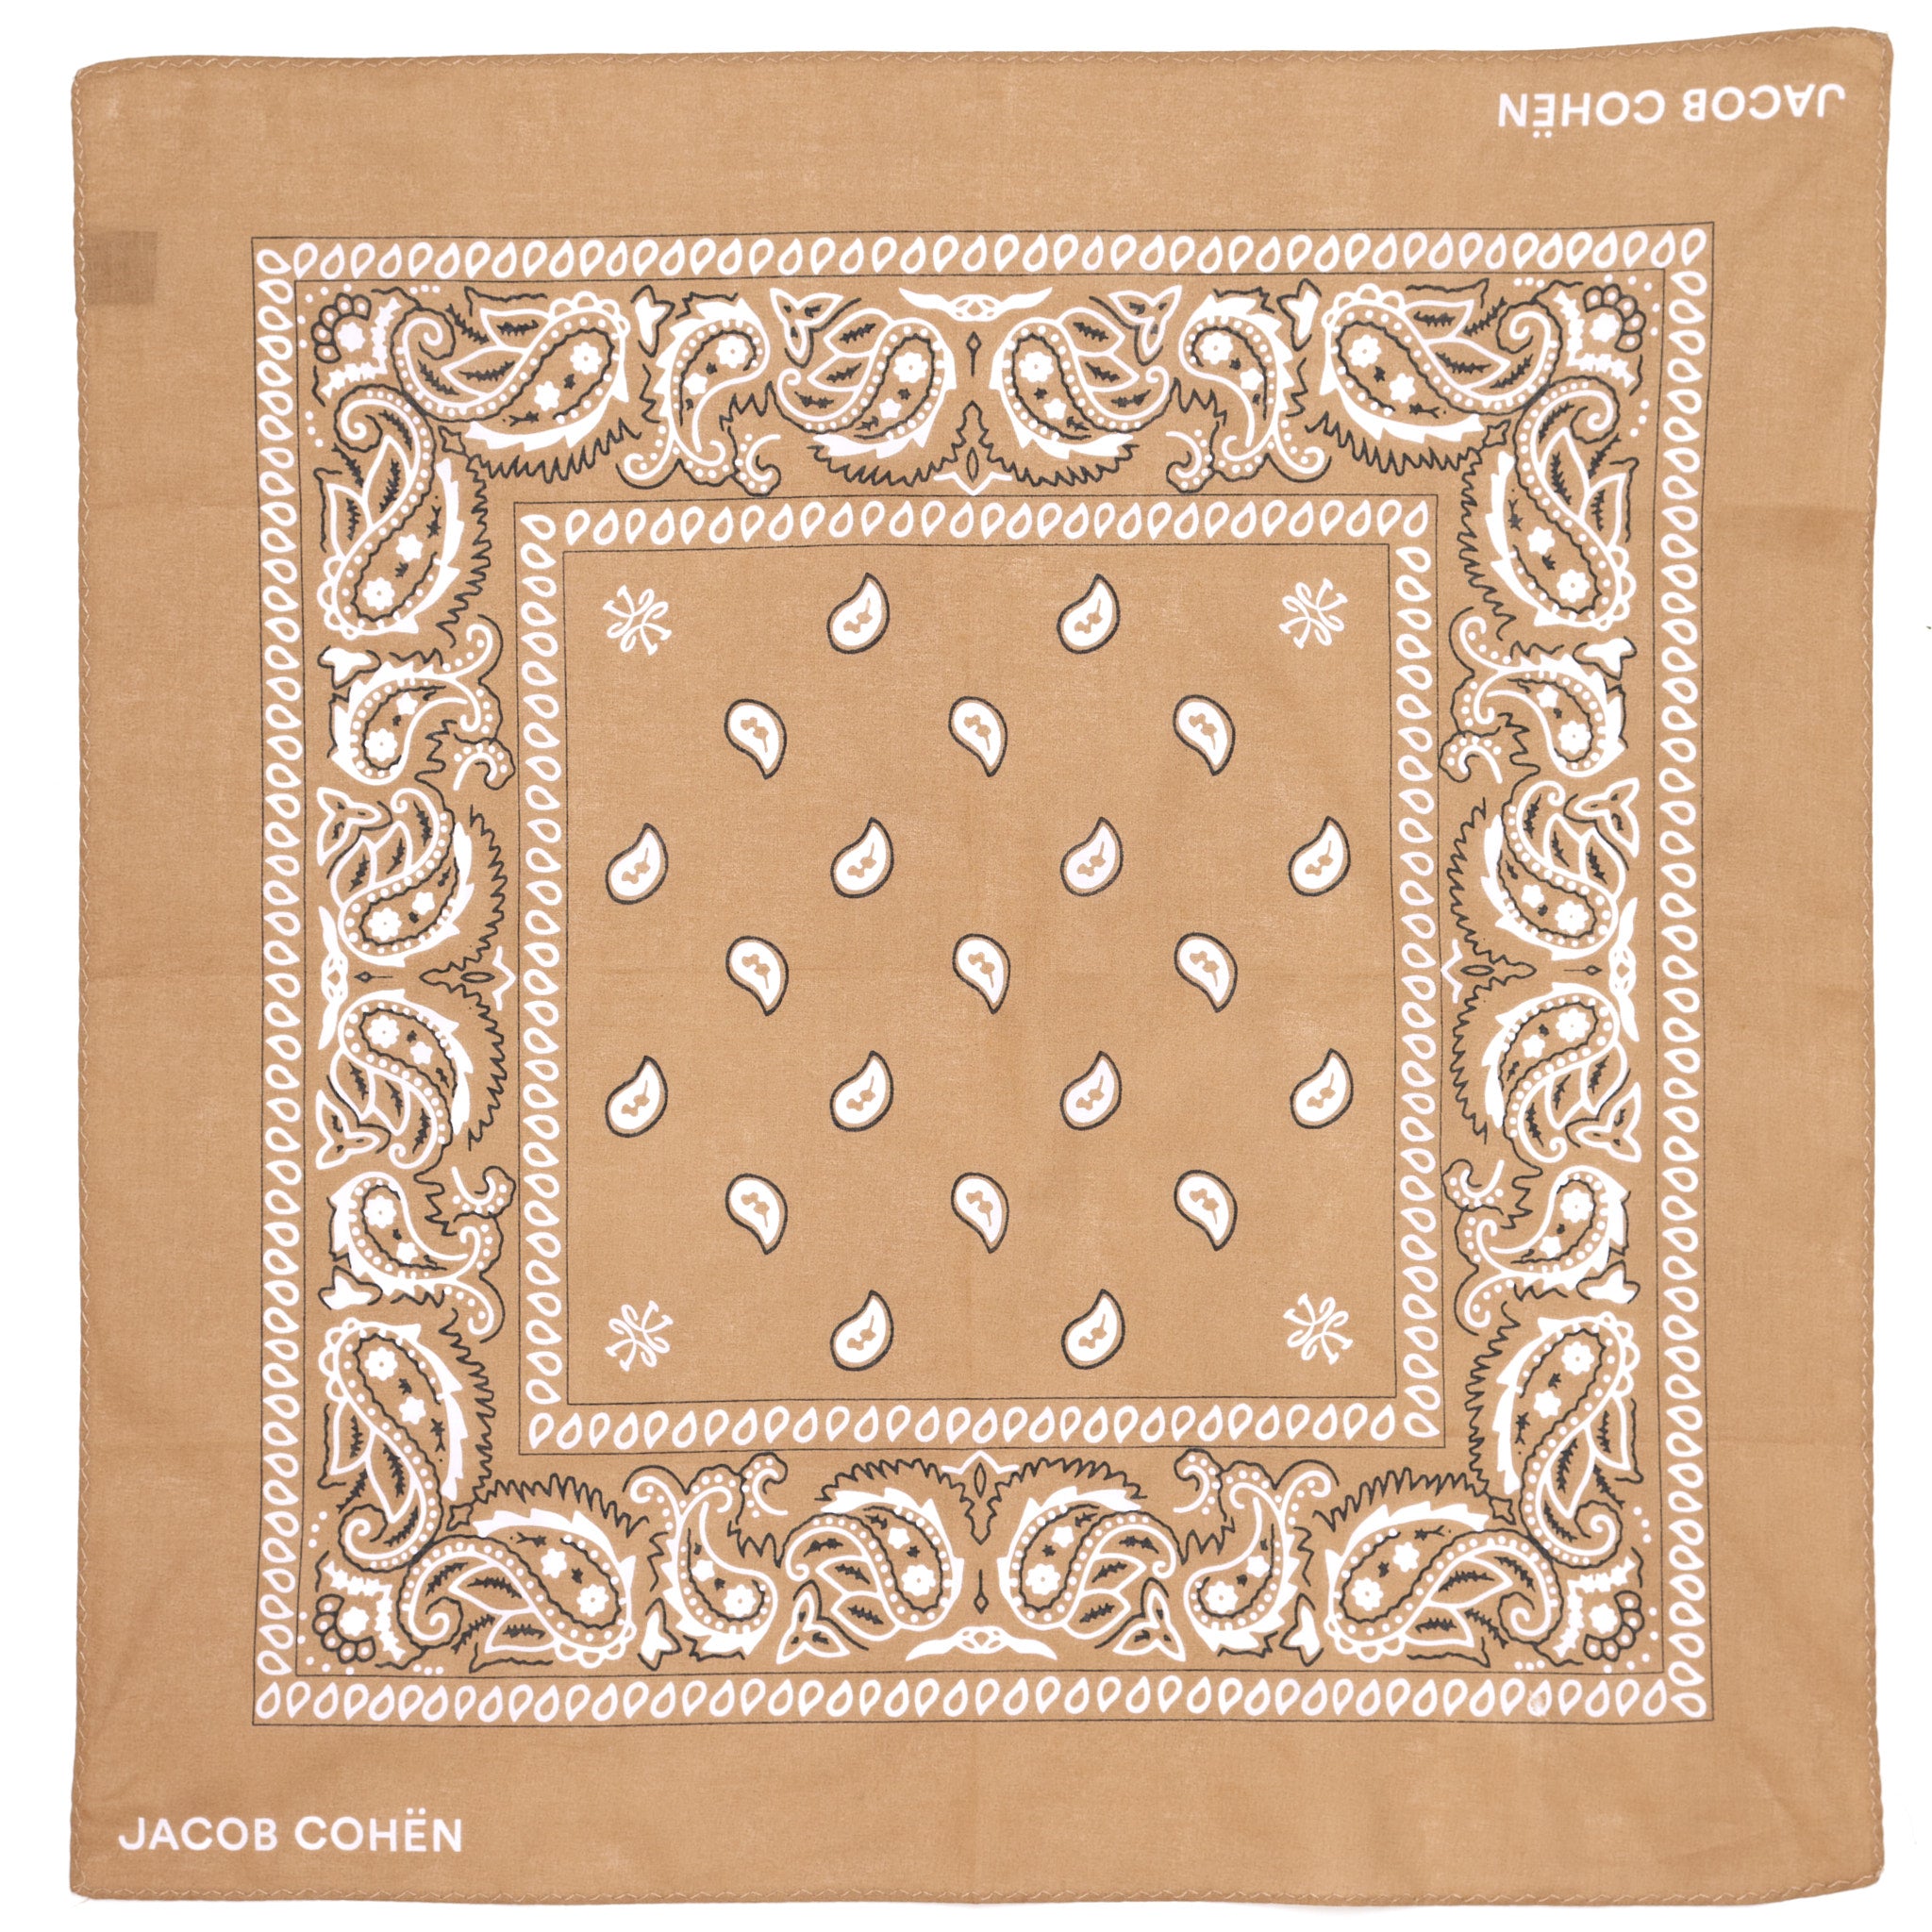 JACOB COHEN Khaki Paisley Printed Pattern Cotton Pocket Square Bandana NEW JACOB COHEN